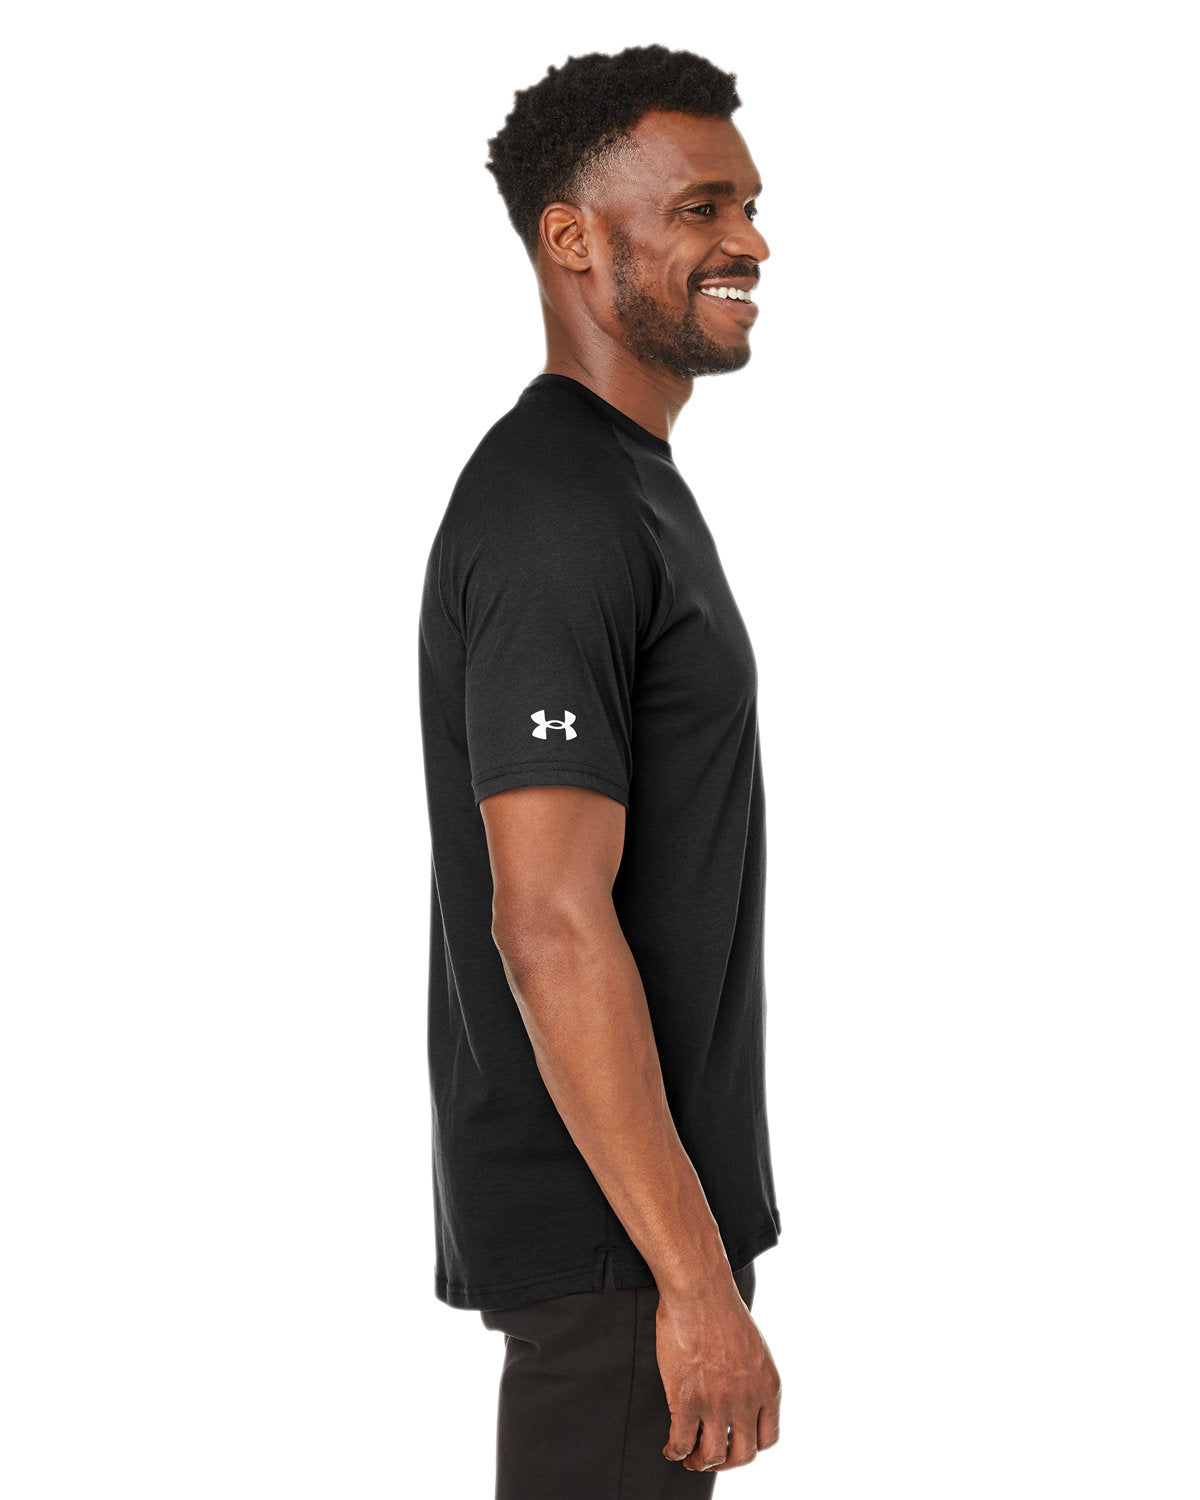 Under Armour Unisex Athletics Customized T-Shirts, Black